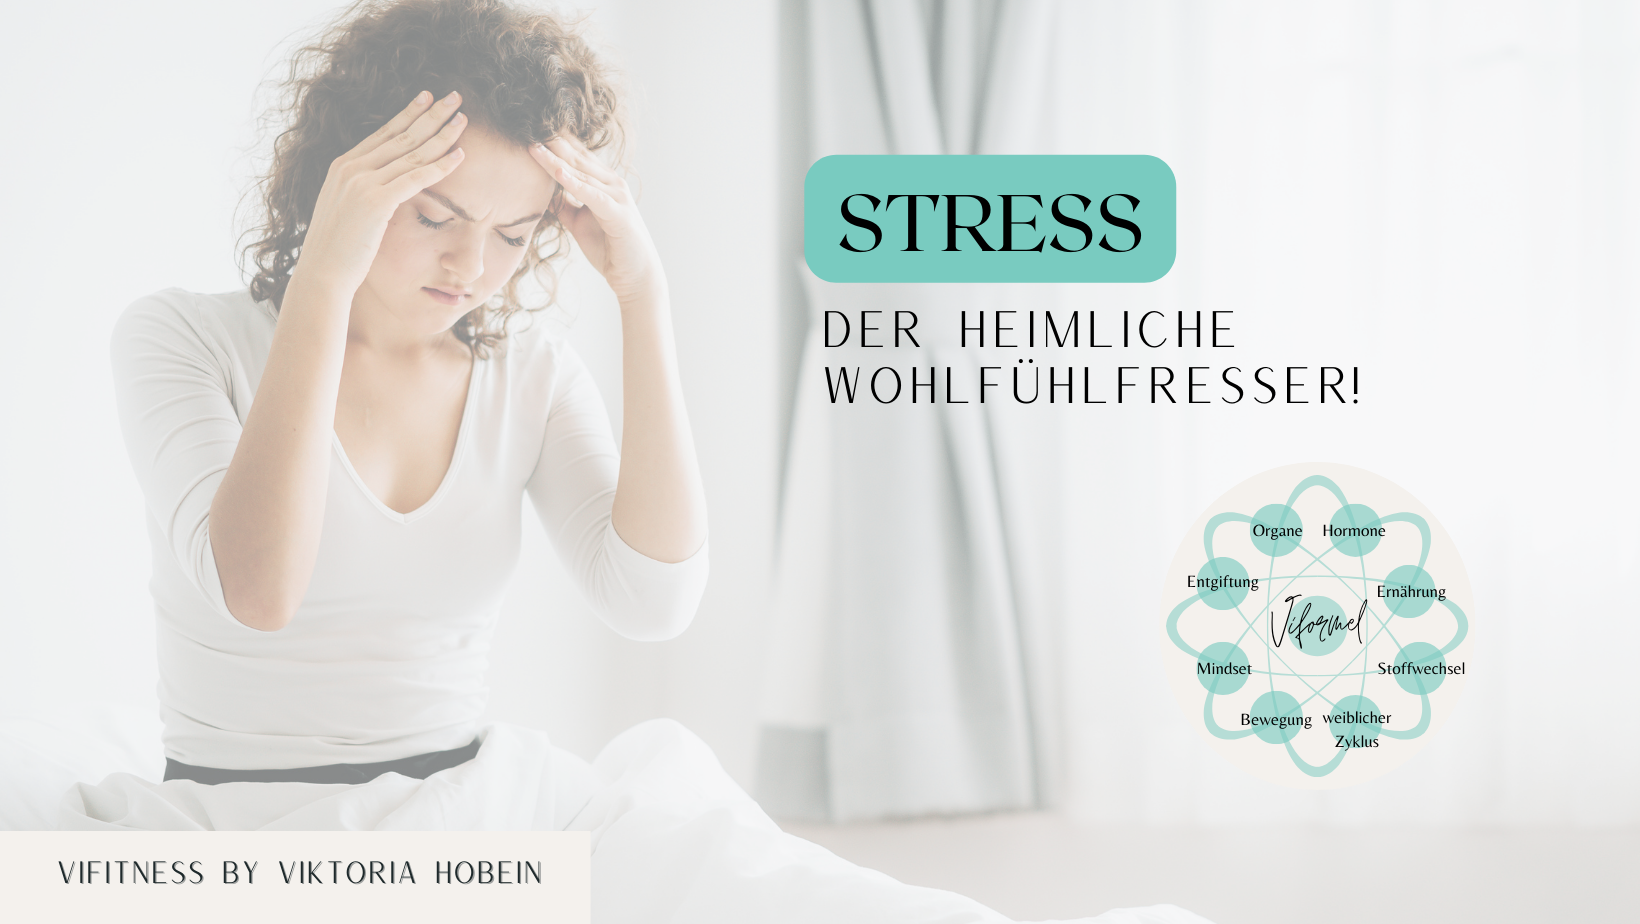 Stress, der heimliche Wohlfühlfresser! 😫